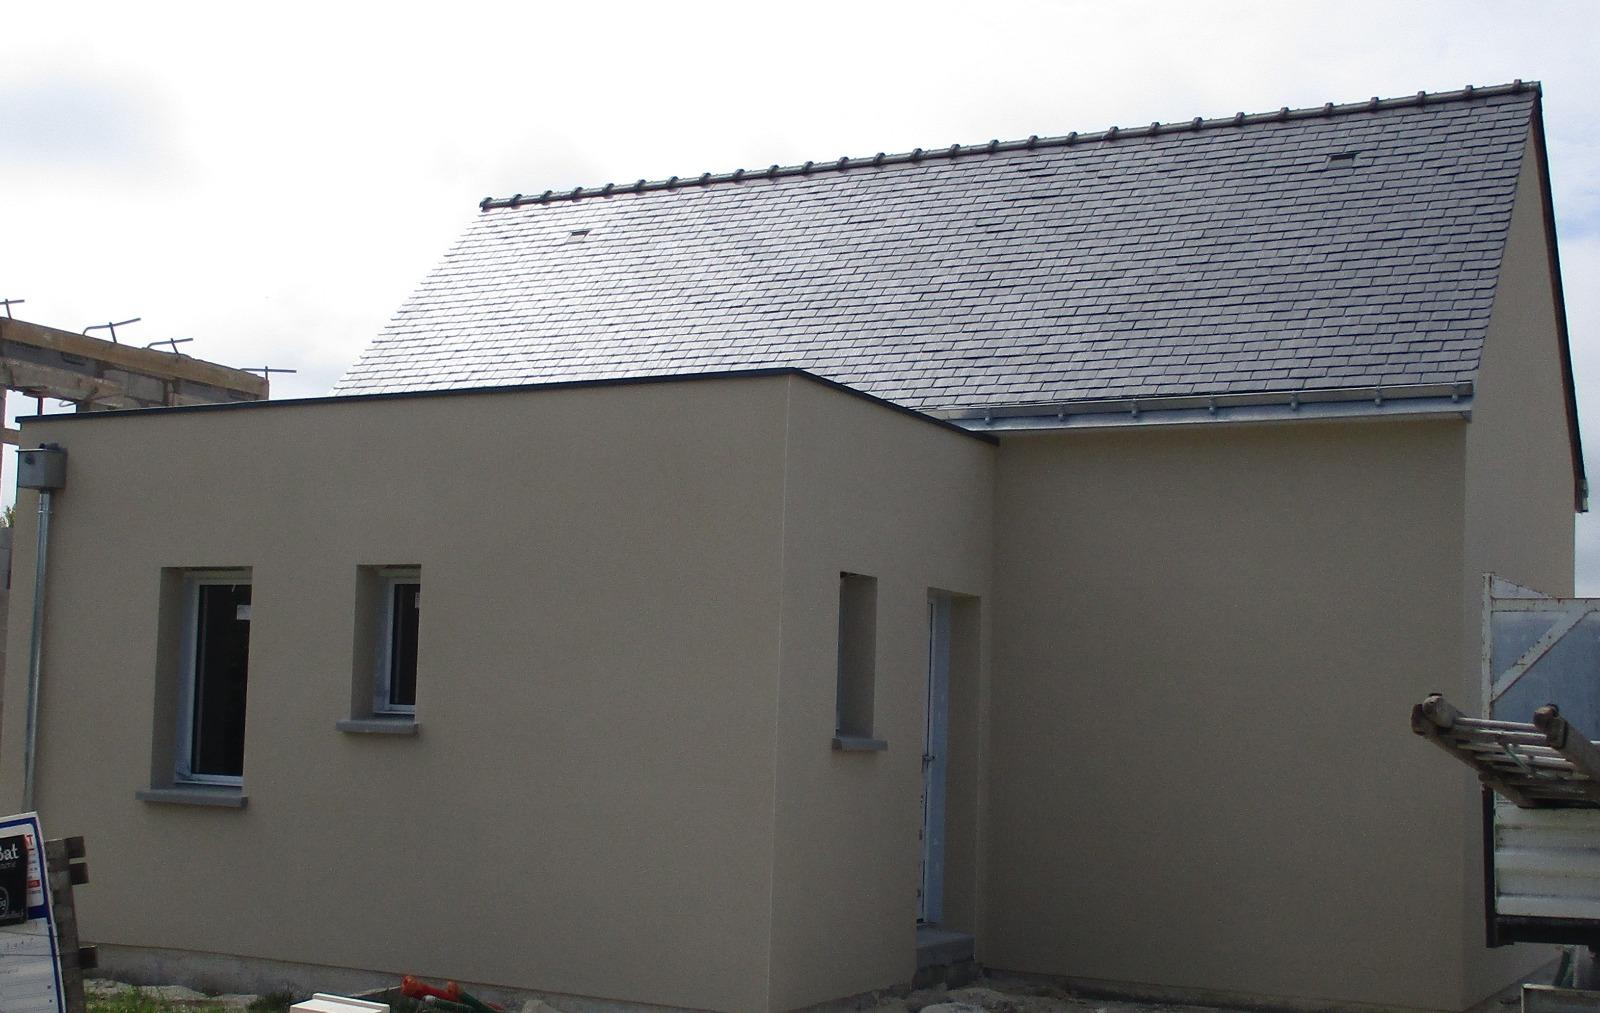 Mesquer - Construction neuve - Couverture ardoises naturelles d'Espagne et étanchéité toit terrasse membrane PVC isolation extérieure